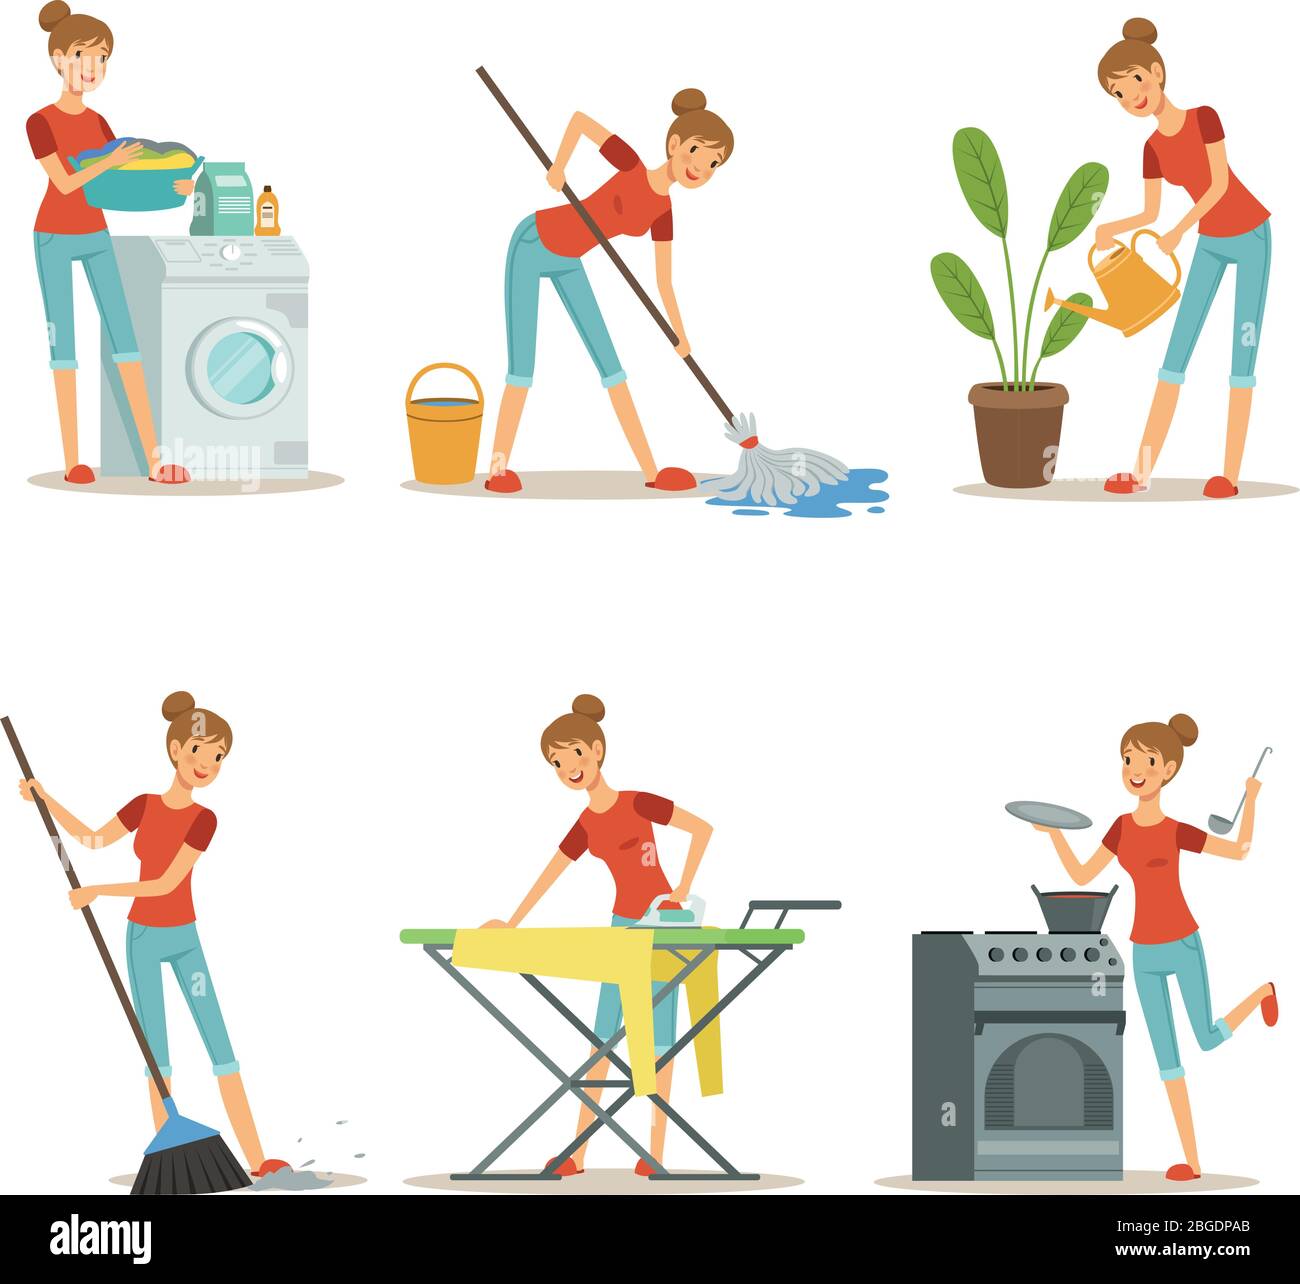 Casalinga fare diversi lavori domestici. Occupazione madre. Set di caratteri cartoni animati vettoriali Illustrazione Vettoriale